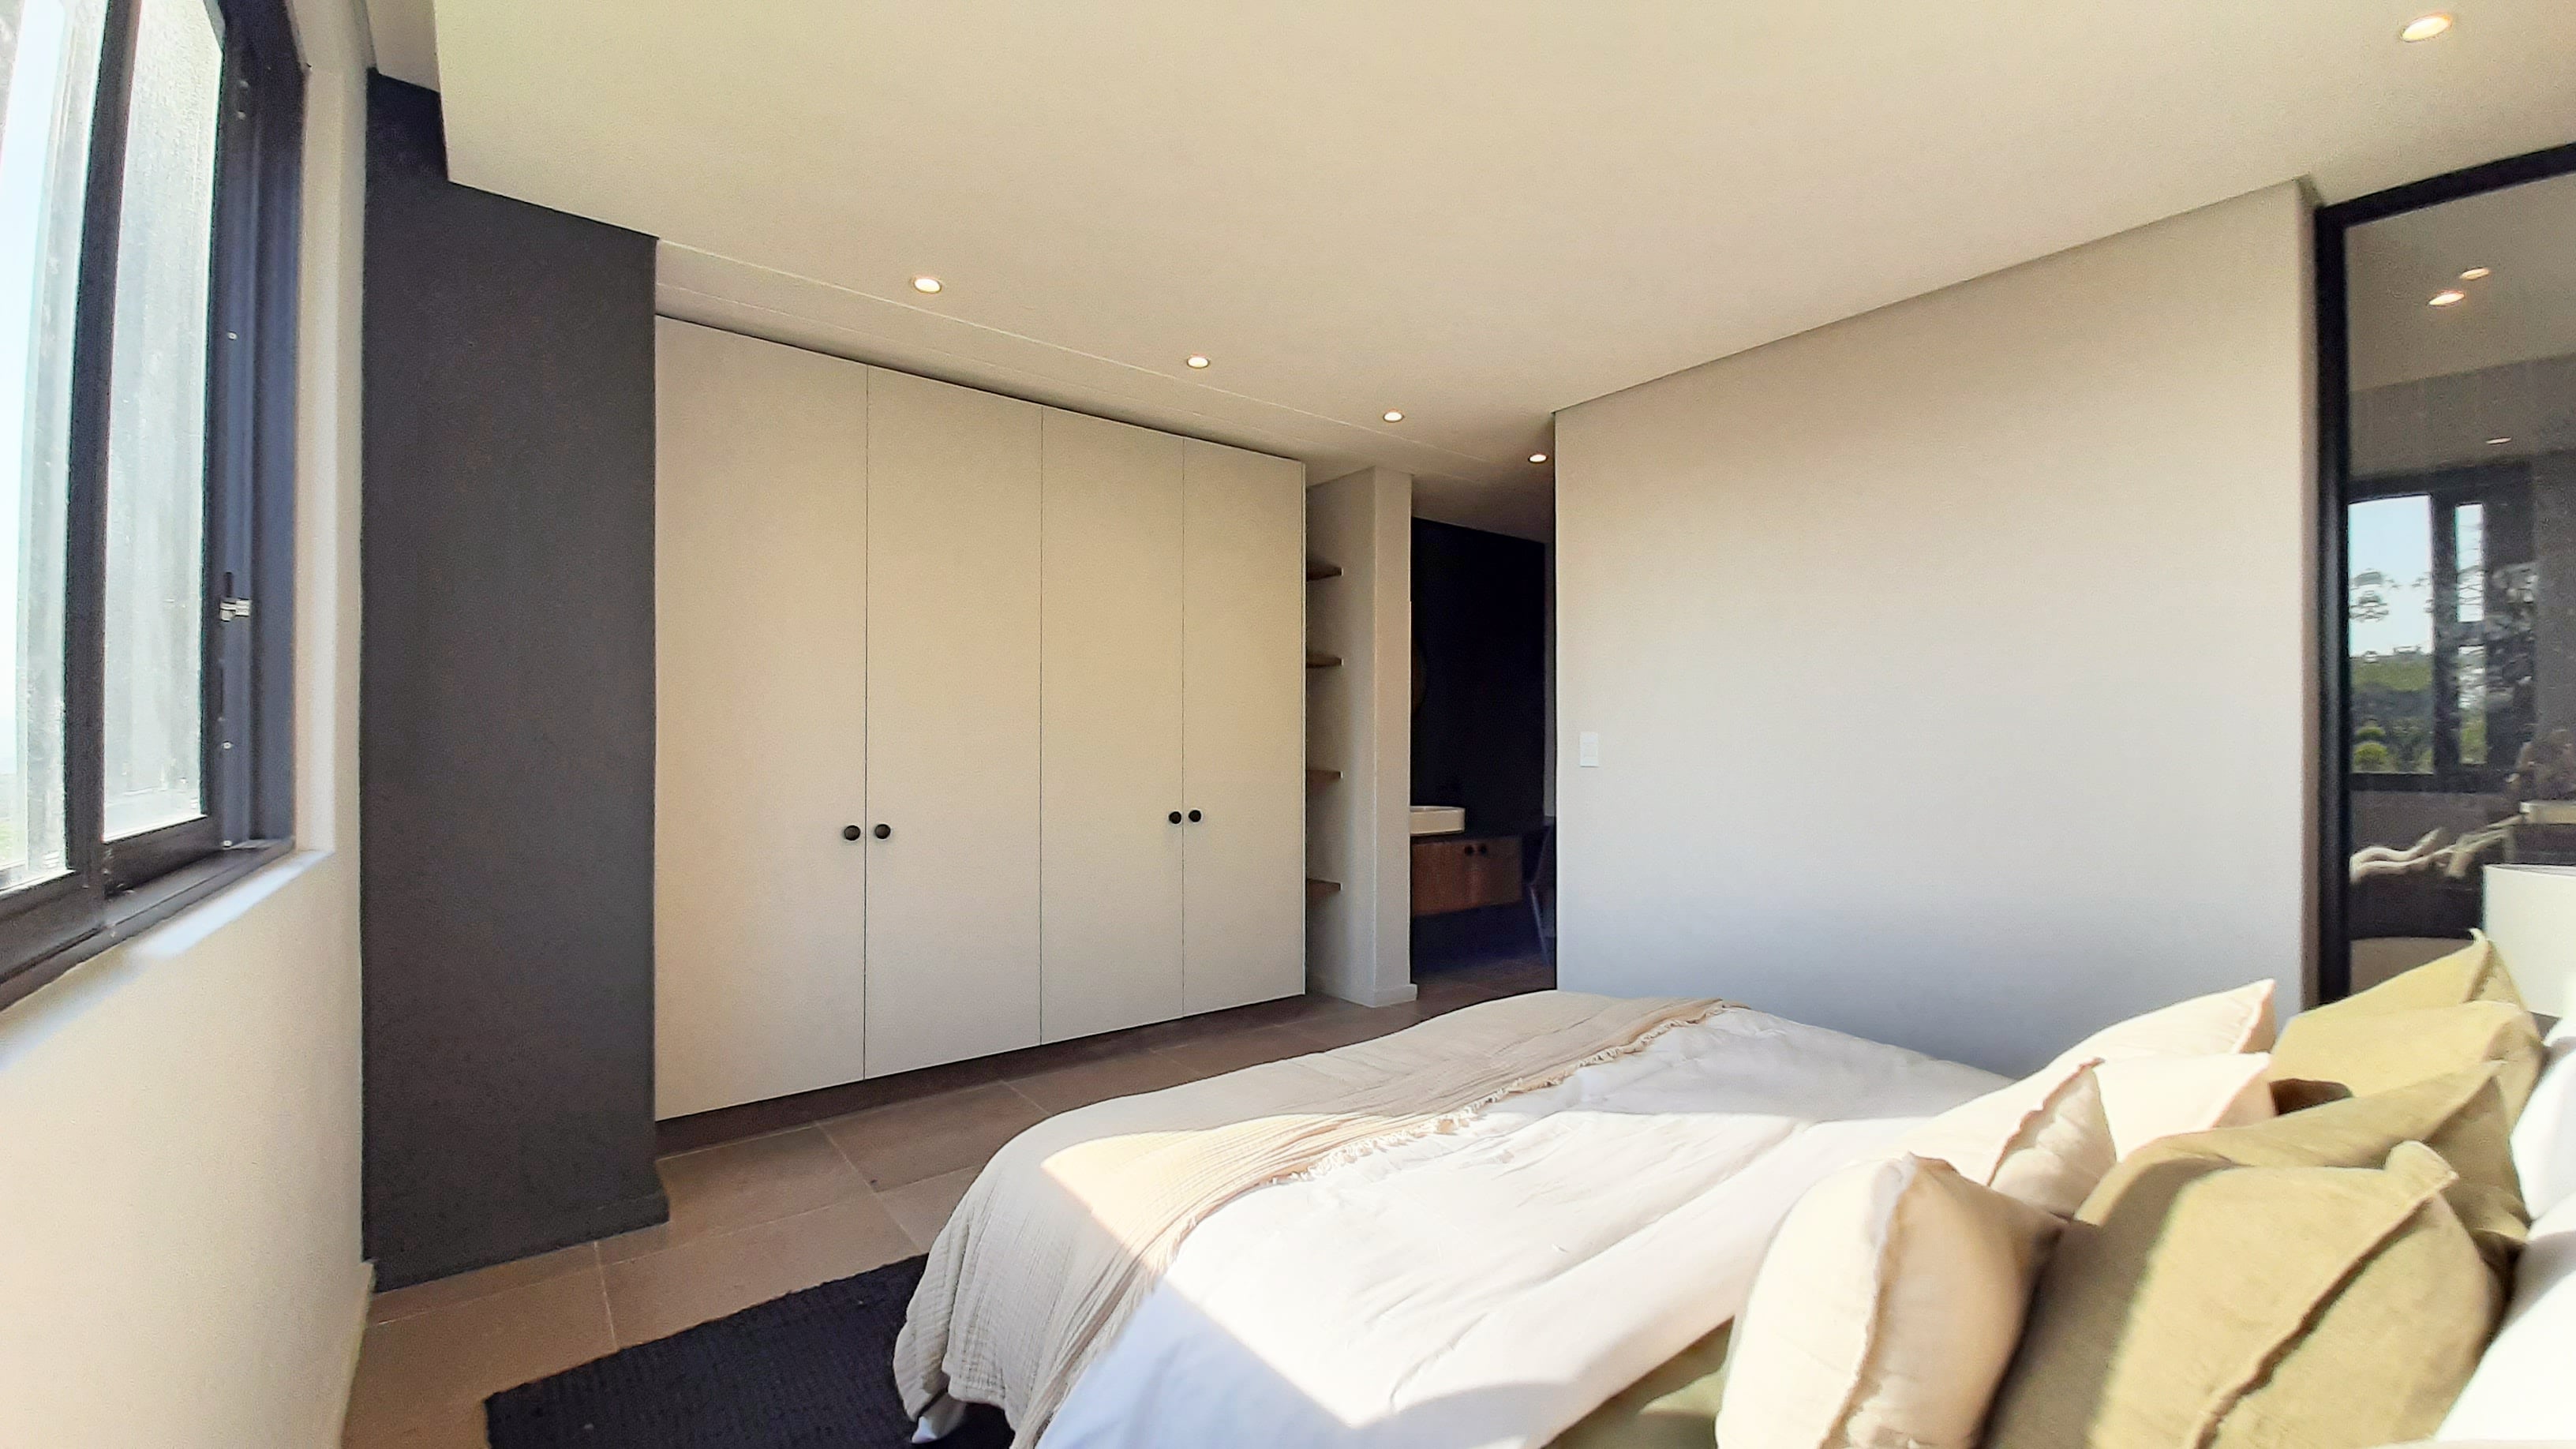 3 Bedroom Property for Sale in Elaleni Coastal Forest Estate KwaZulu-Natal